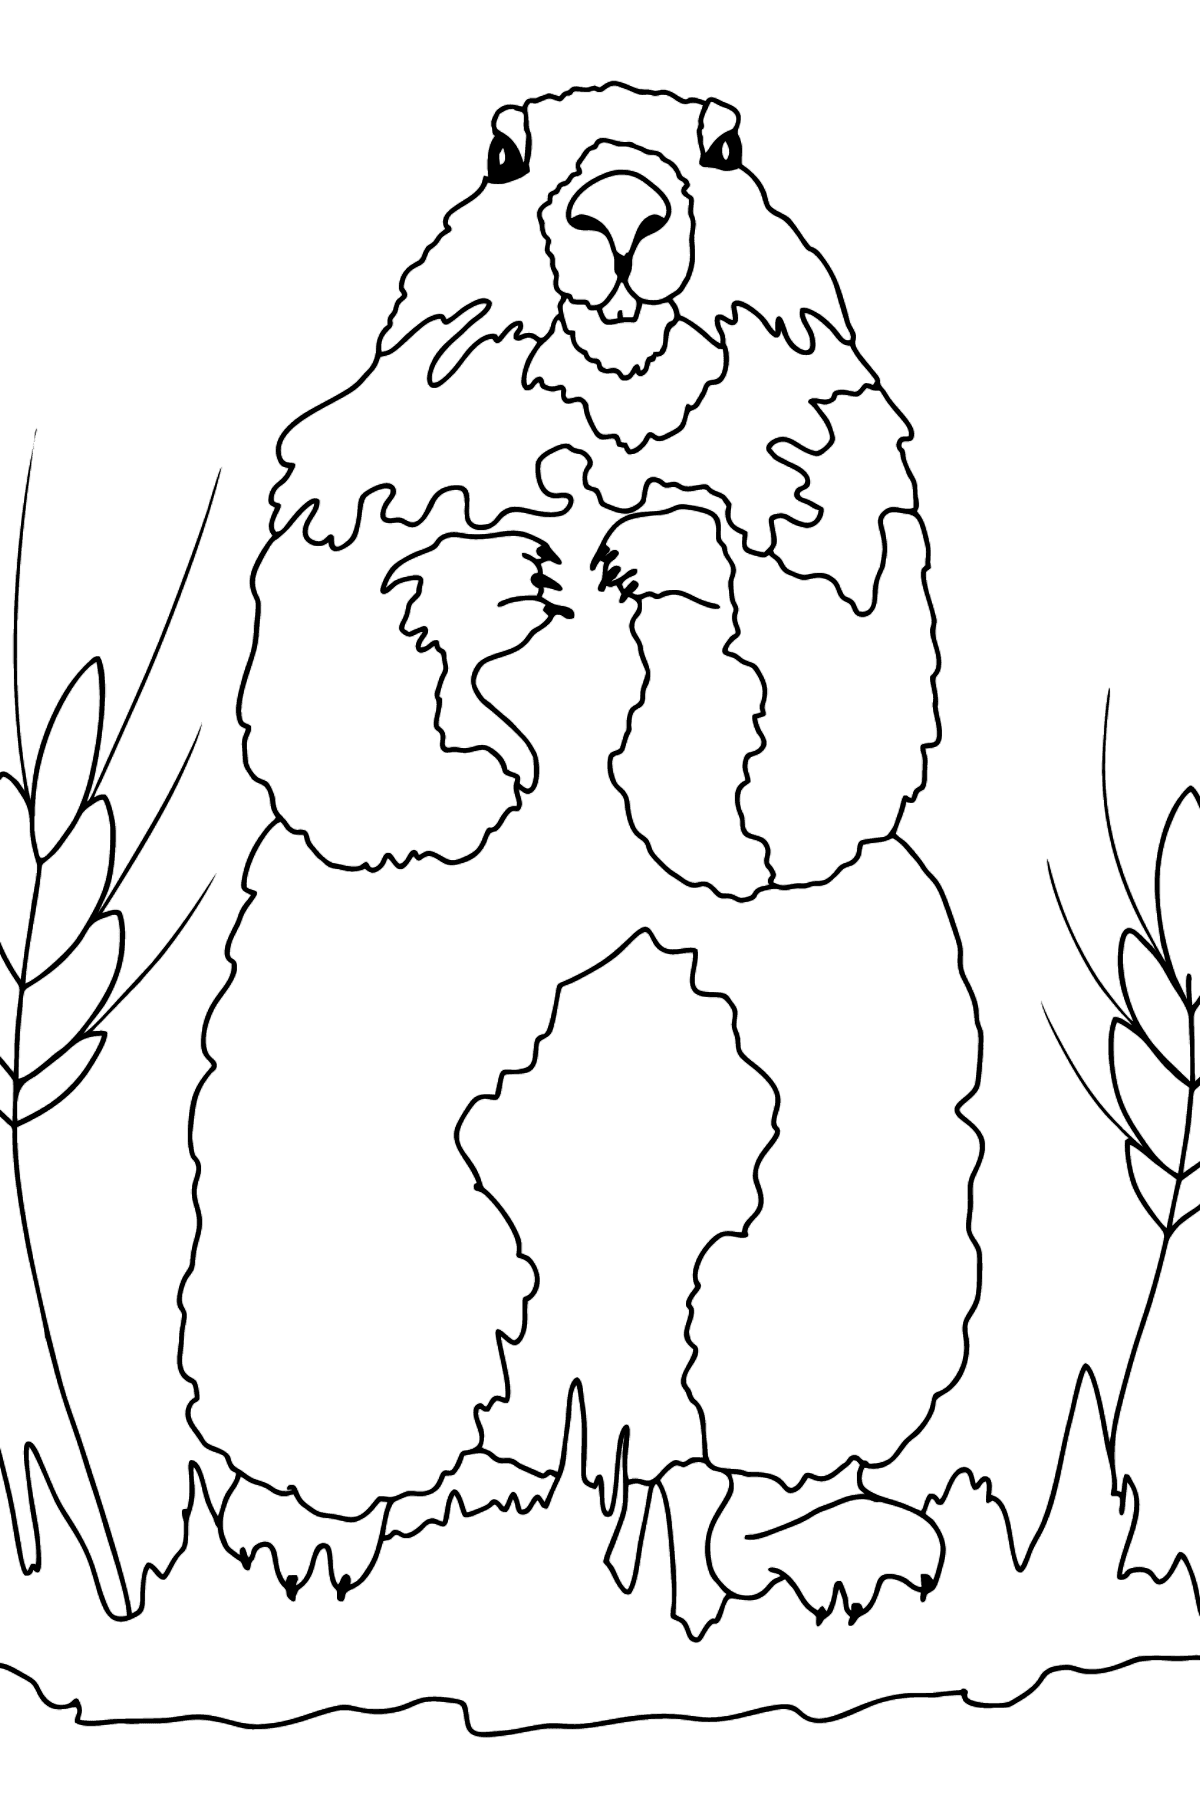 Dibujos para Colorear - Una Marmota está Mirando Afuera de su Madriguera - Dibujos para Colorear para Niños